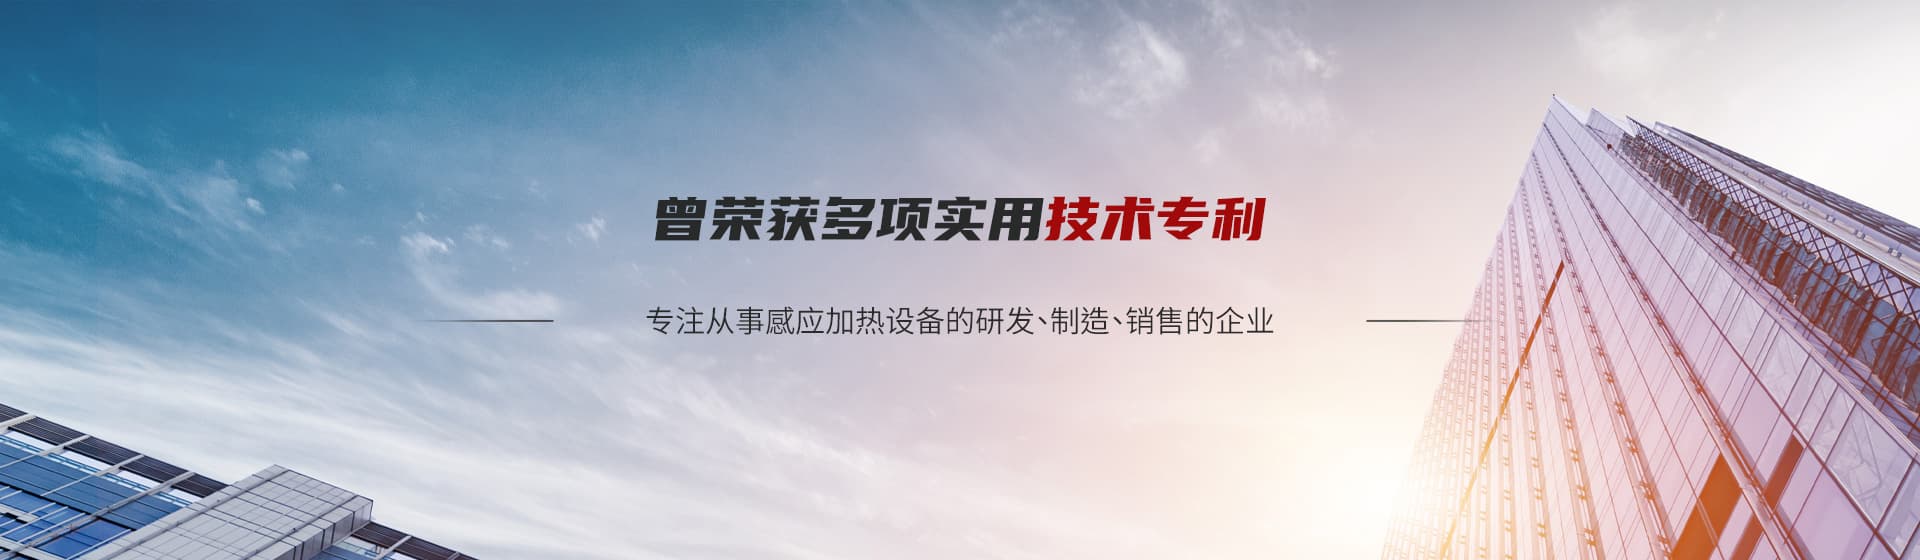 洛陽(yáng)百瑞科技有限公司